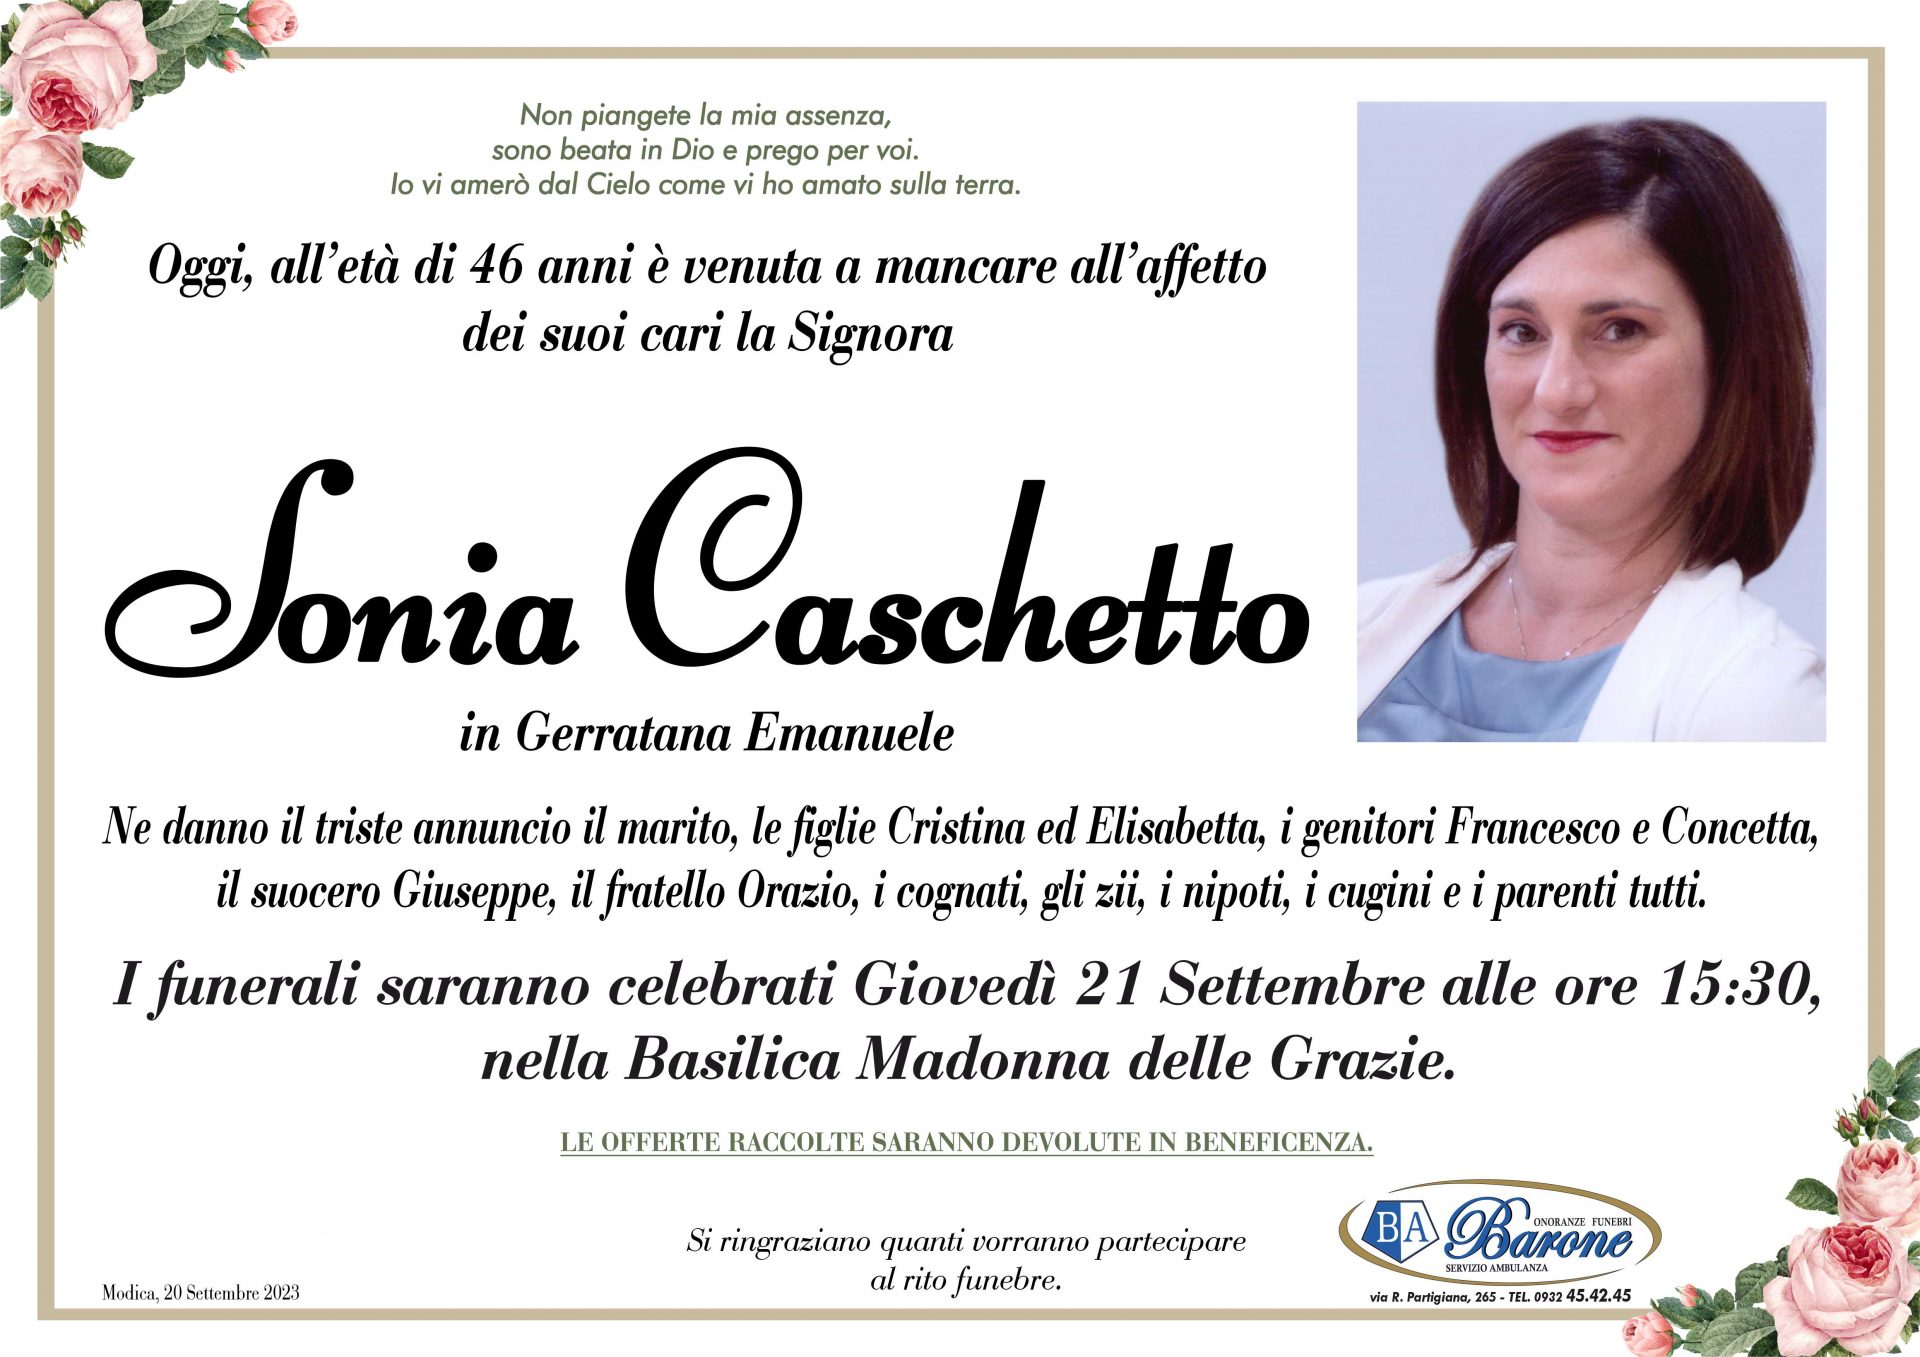 Sonia Caschetto